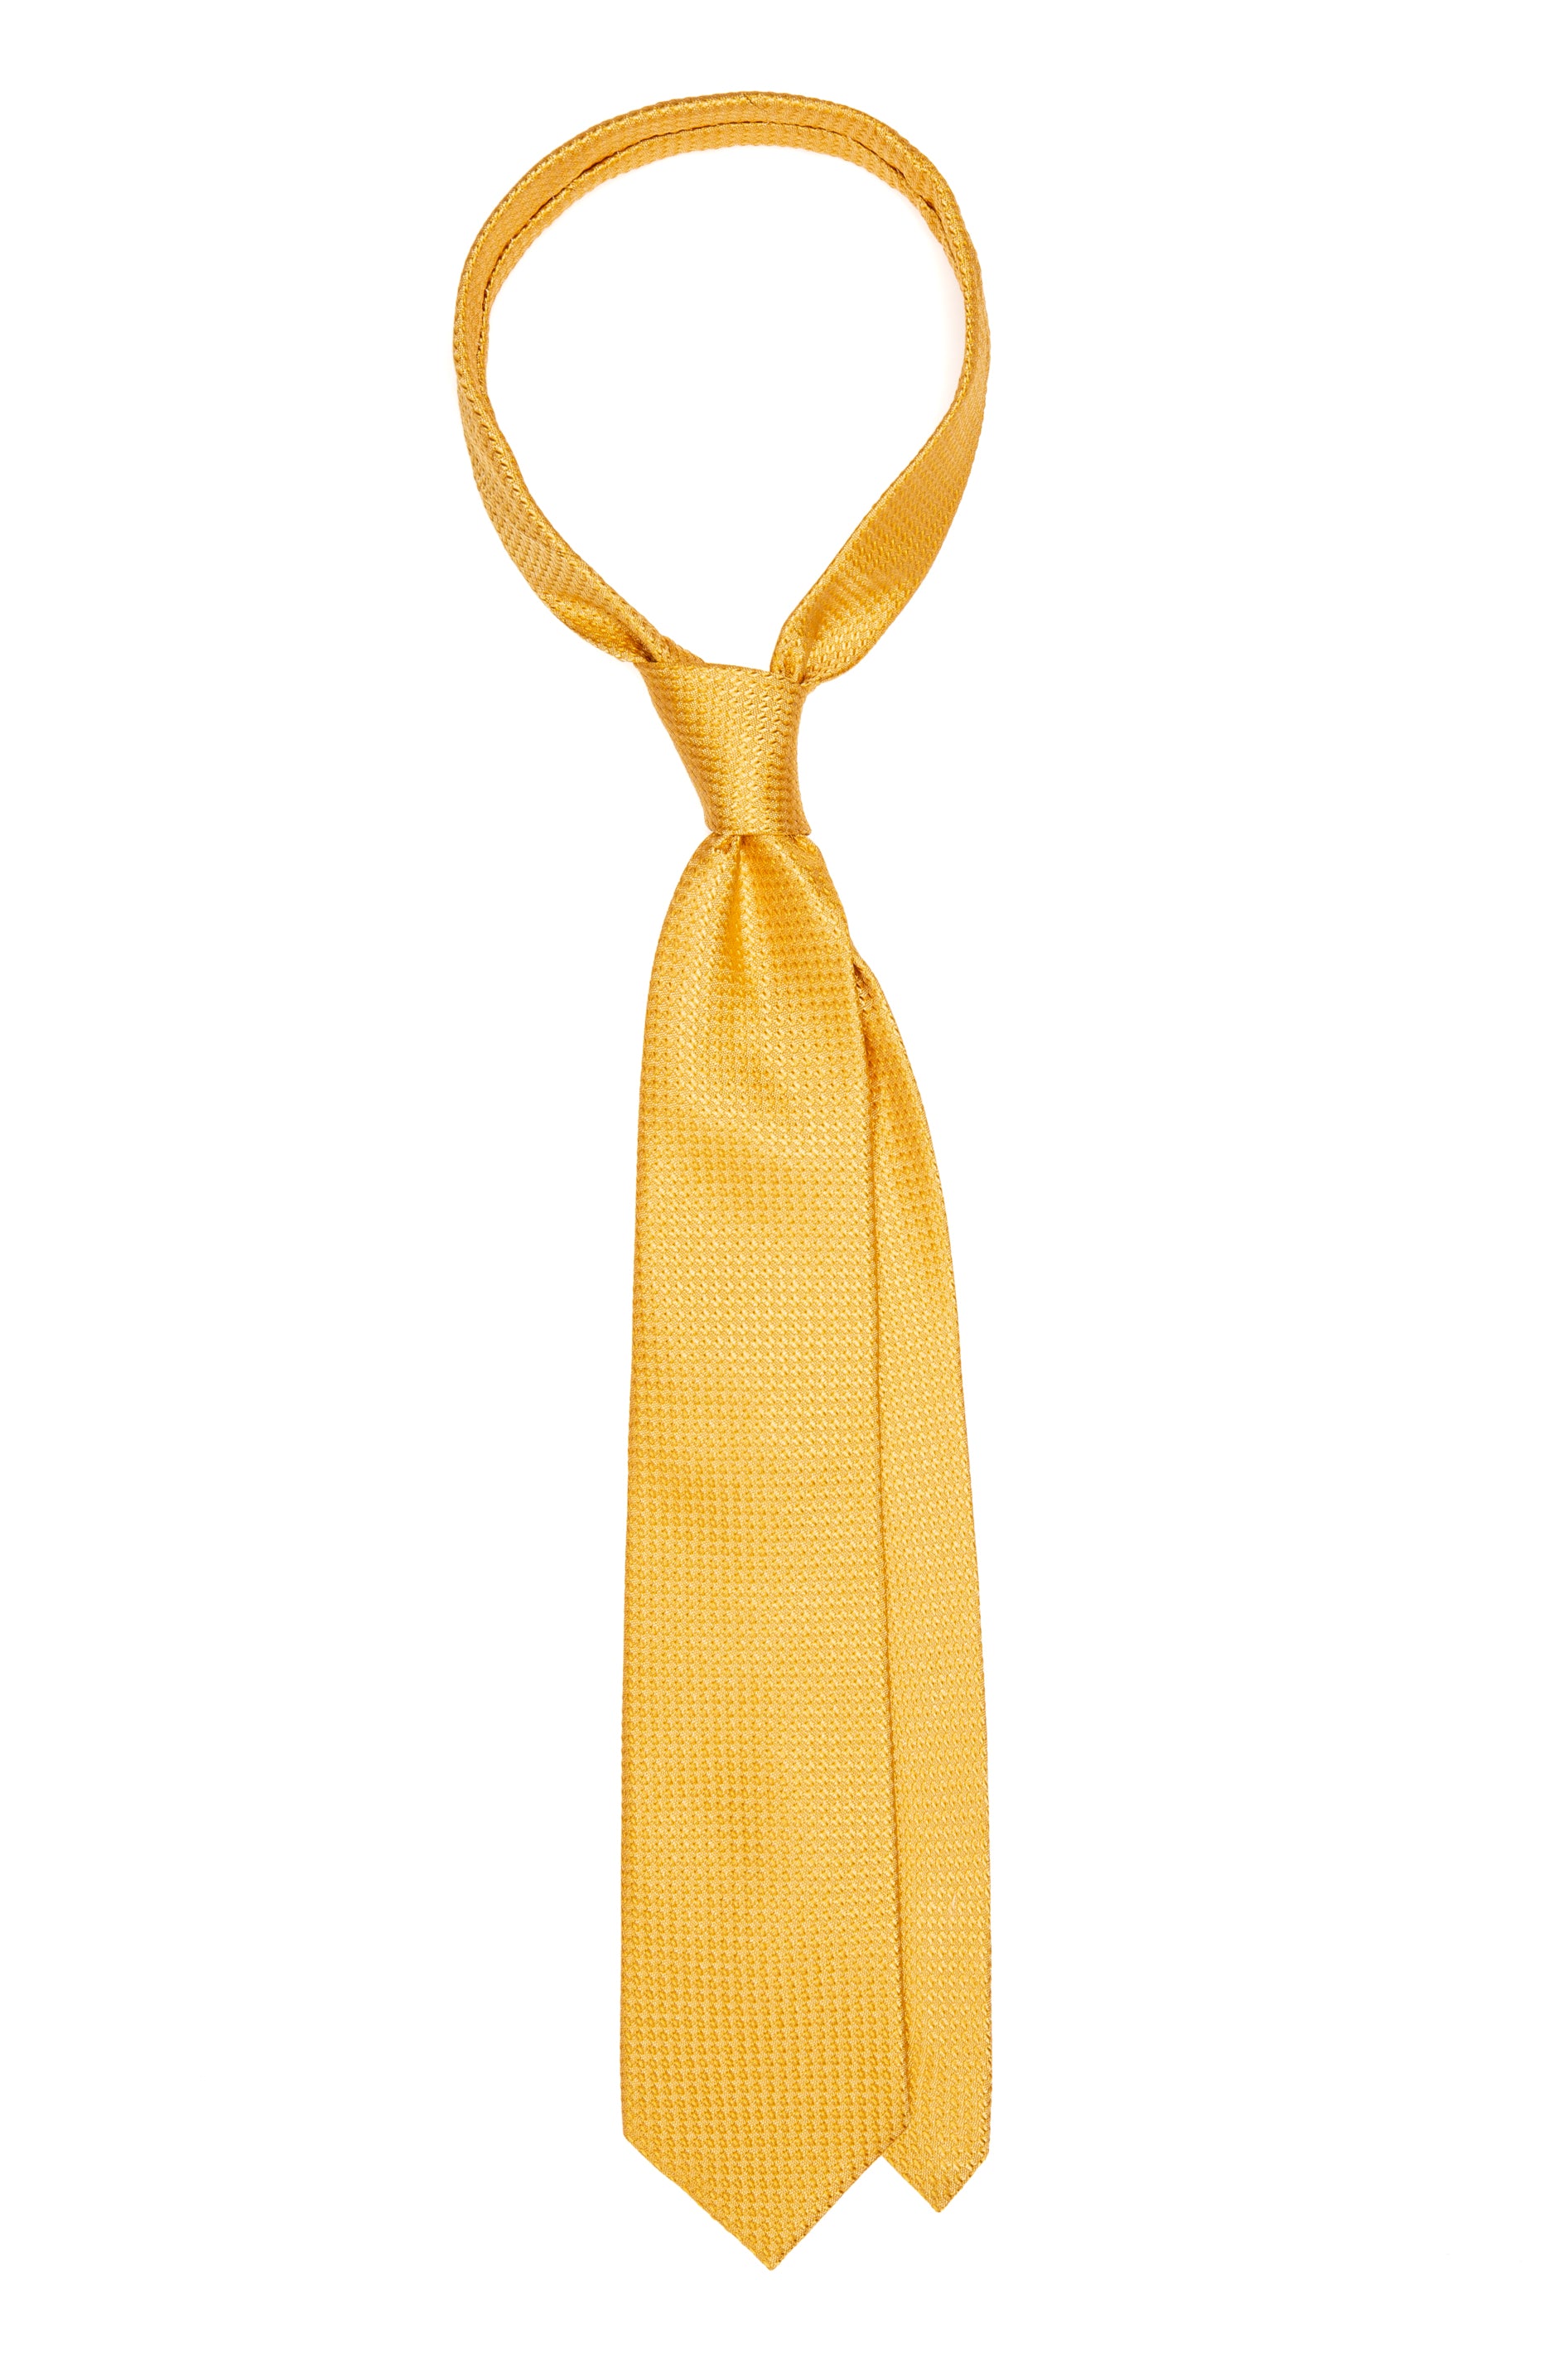 Textured yellow silk tie